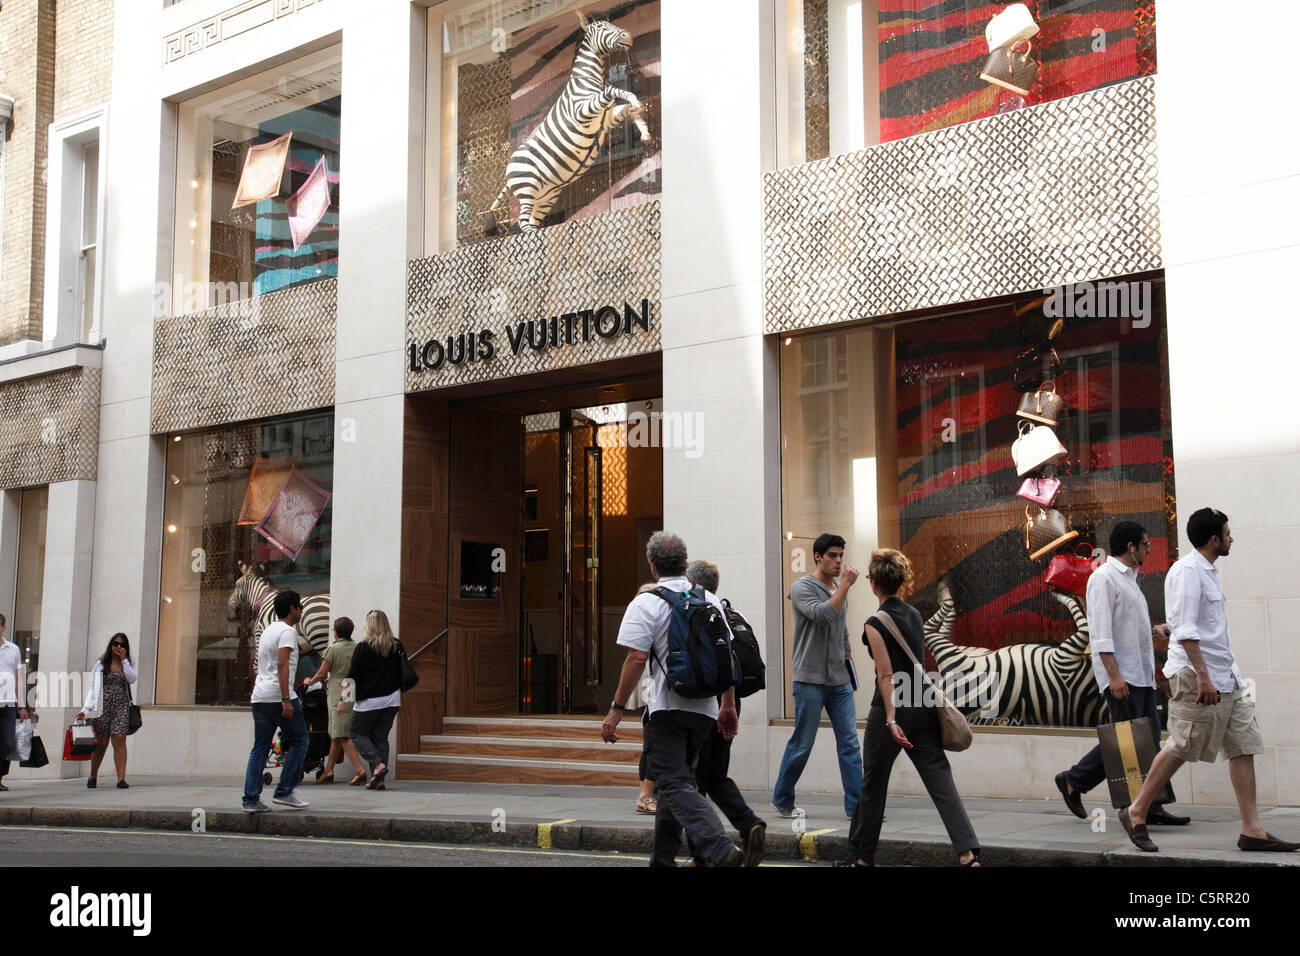 A Louis Vuitton store on Bond Street, England, Stock Photo - Alamy